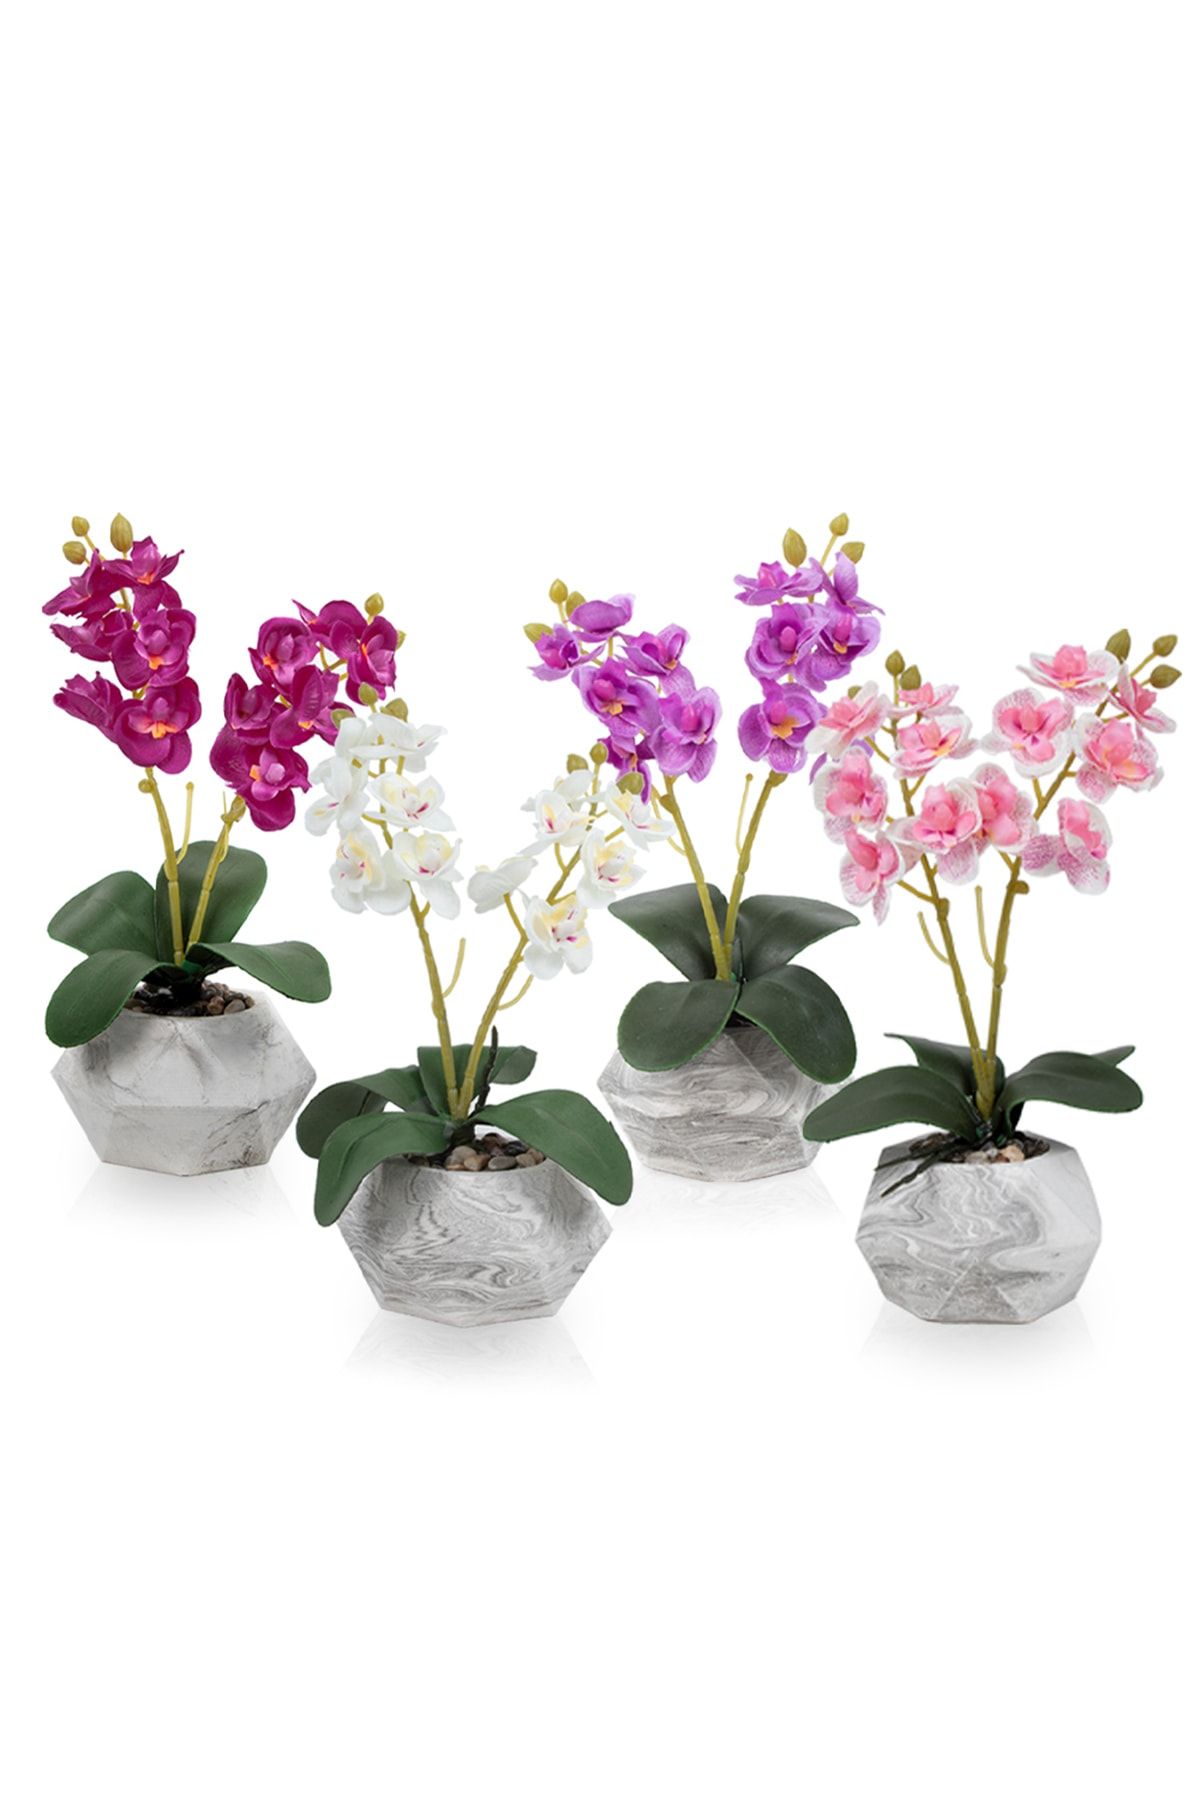 Çiçekmisin 4'lü Set Mermer Görünümlü Saksıda Yapay Orkide